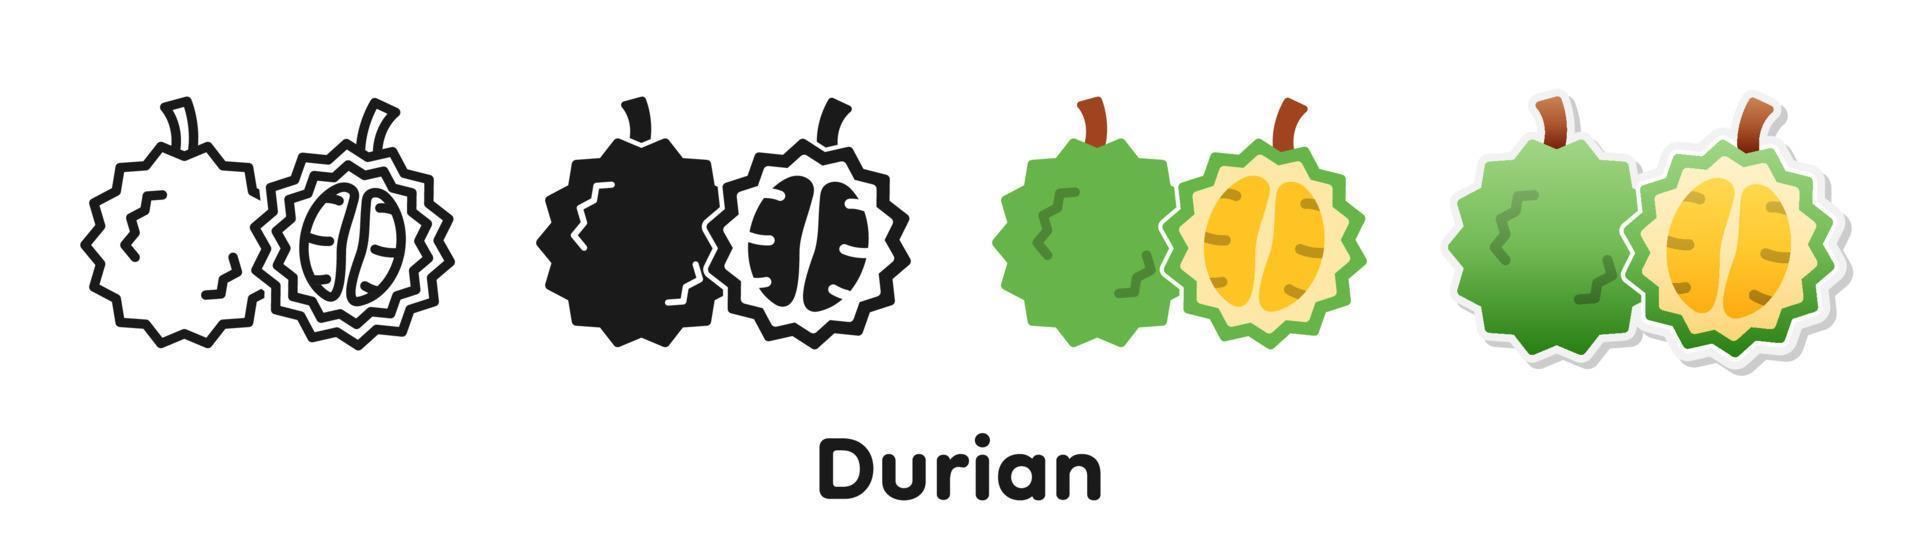 conjunto de ícones de vetor de durian.